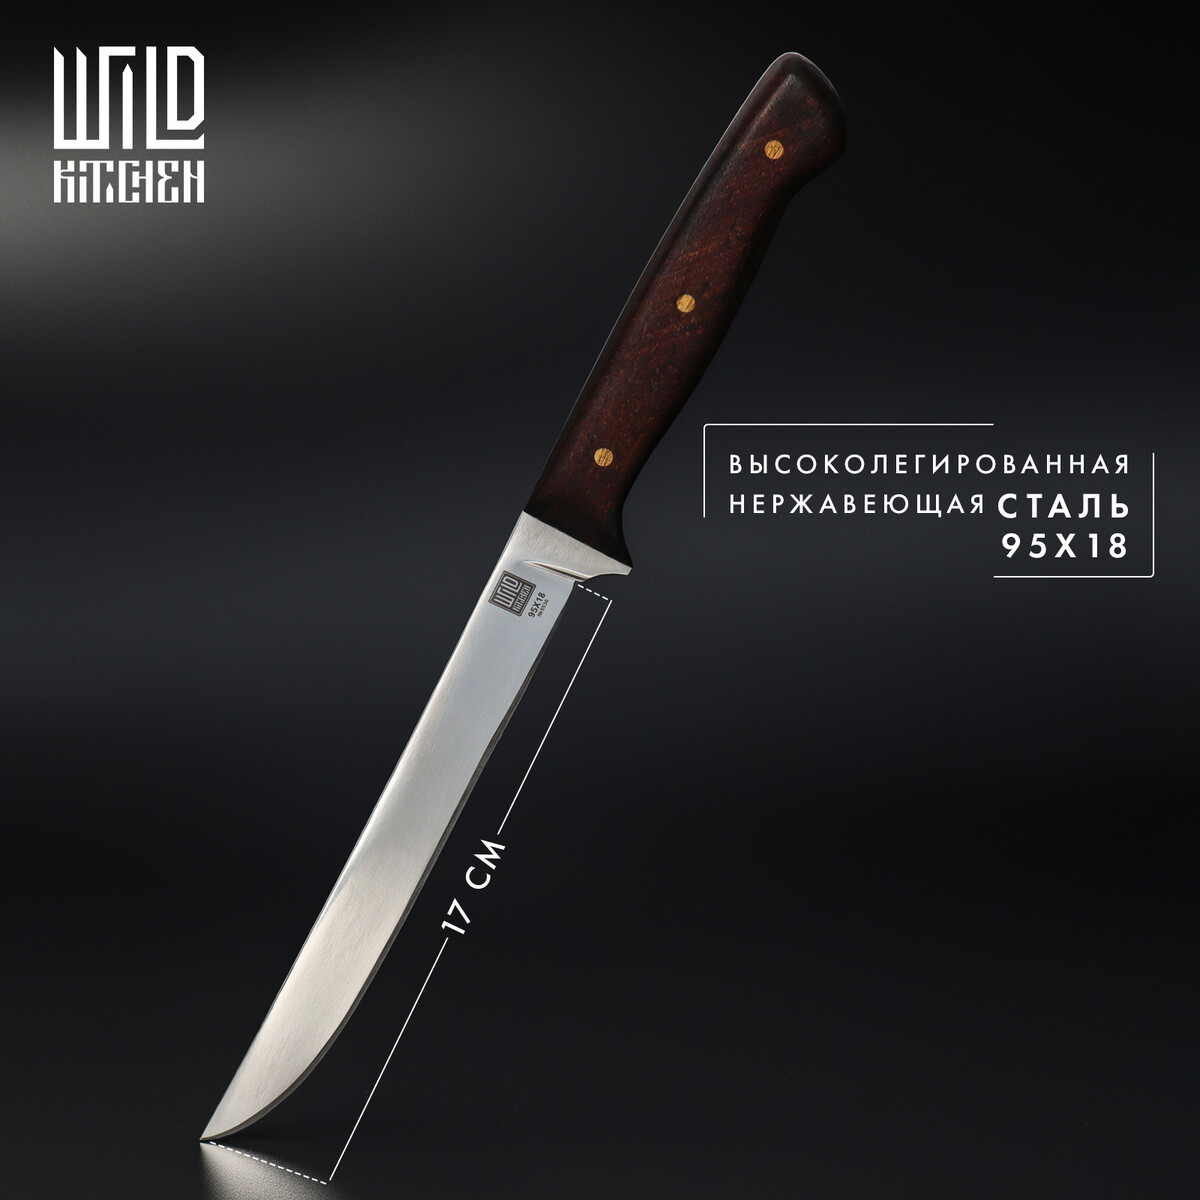 Нож кухонный филейный wild kitchen, сталь 95×18, лезвие 17 см корнеудалитель длина 60 см нержавеющая сталь деревянная ручка